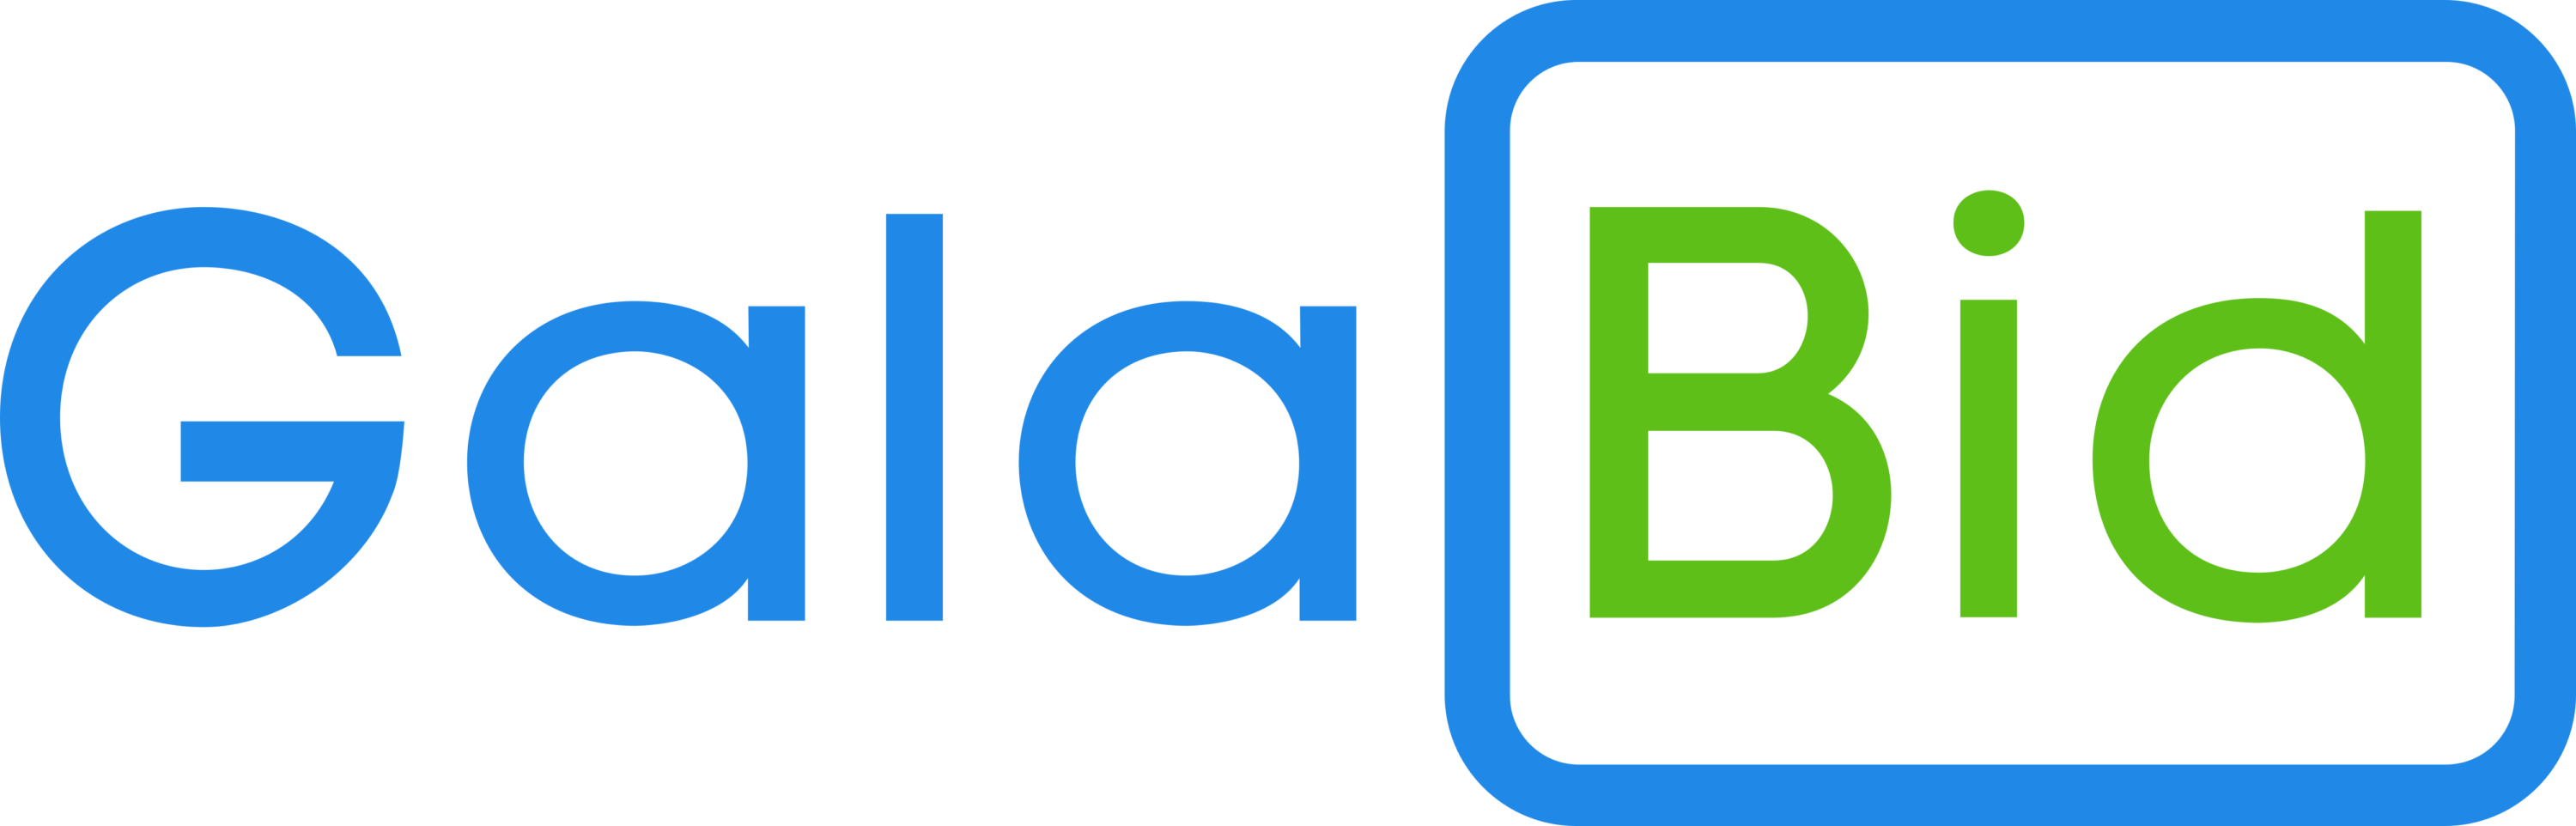 GalaBid Logo